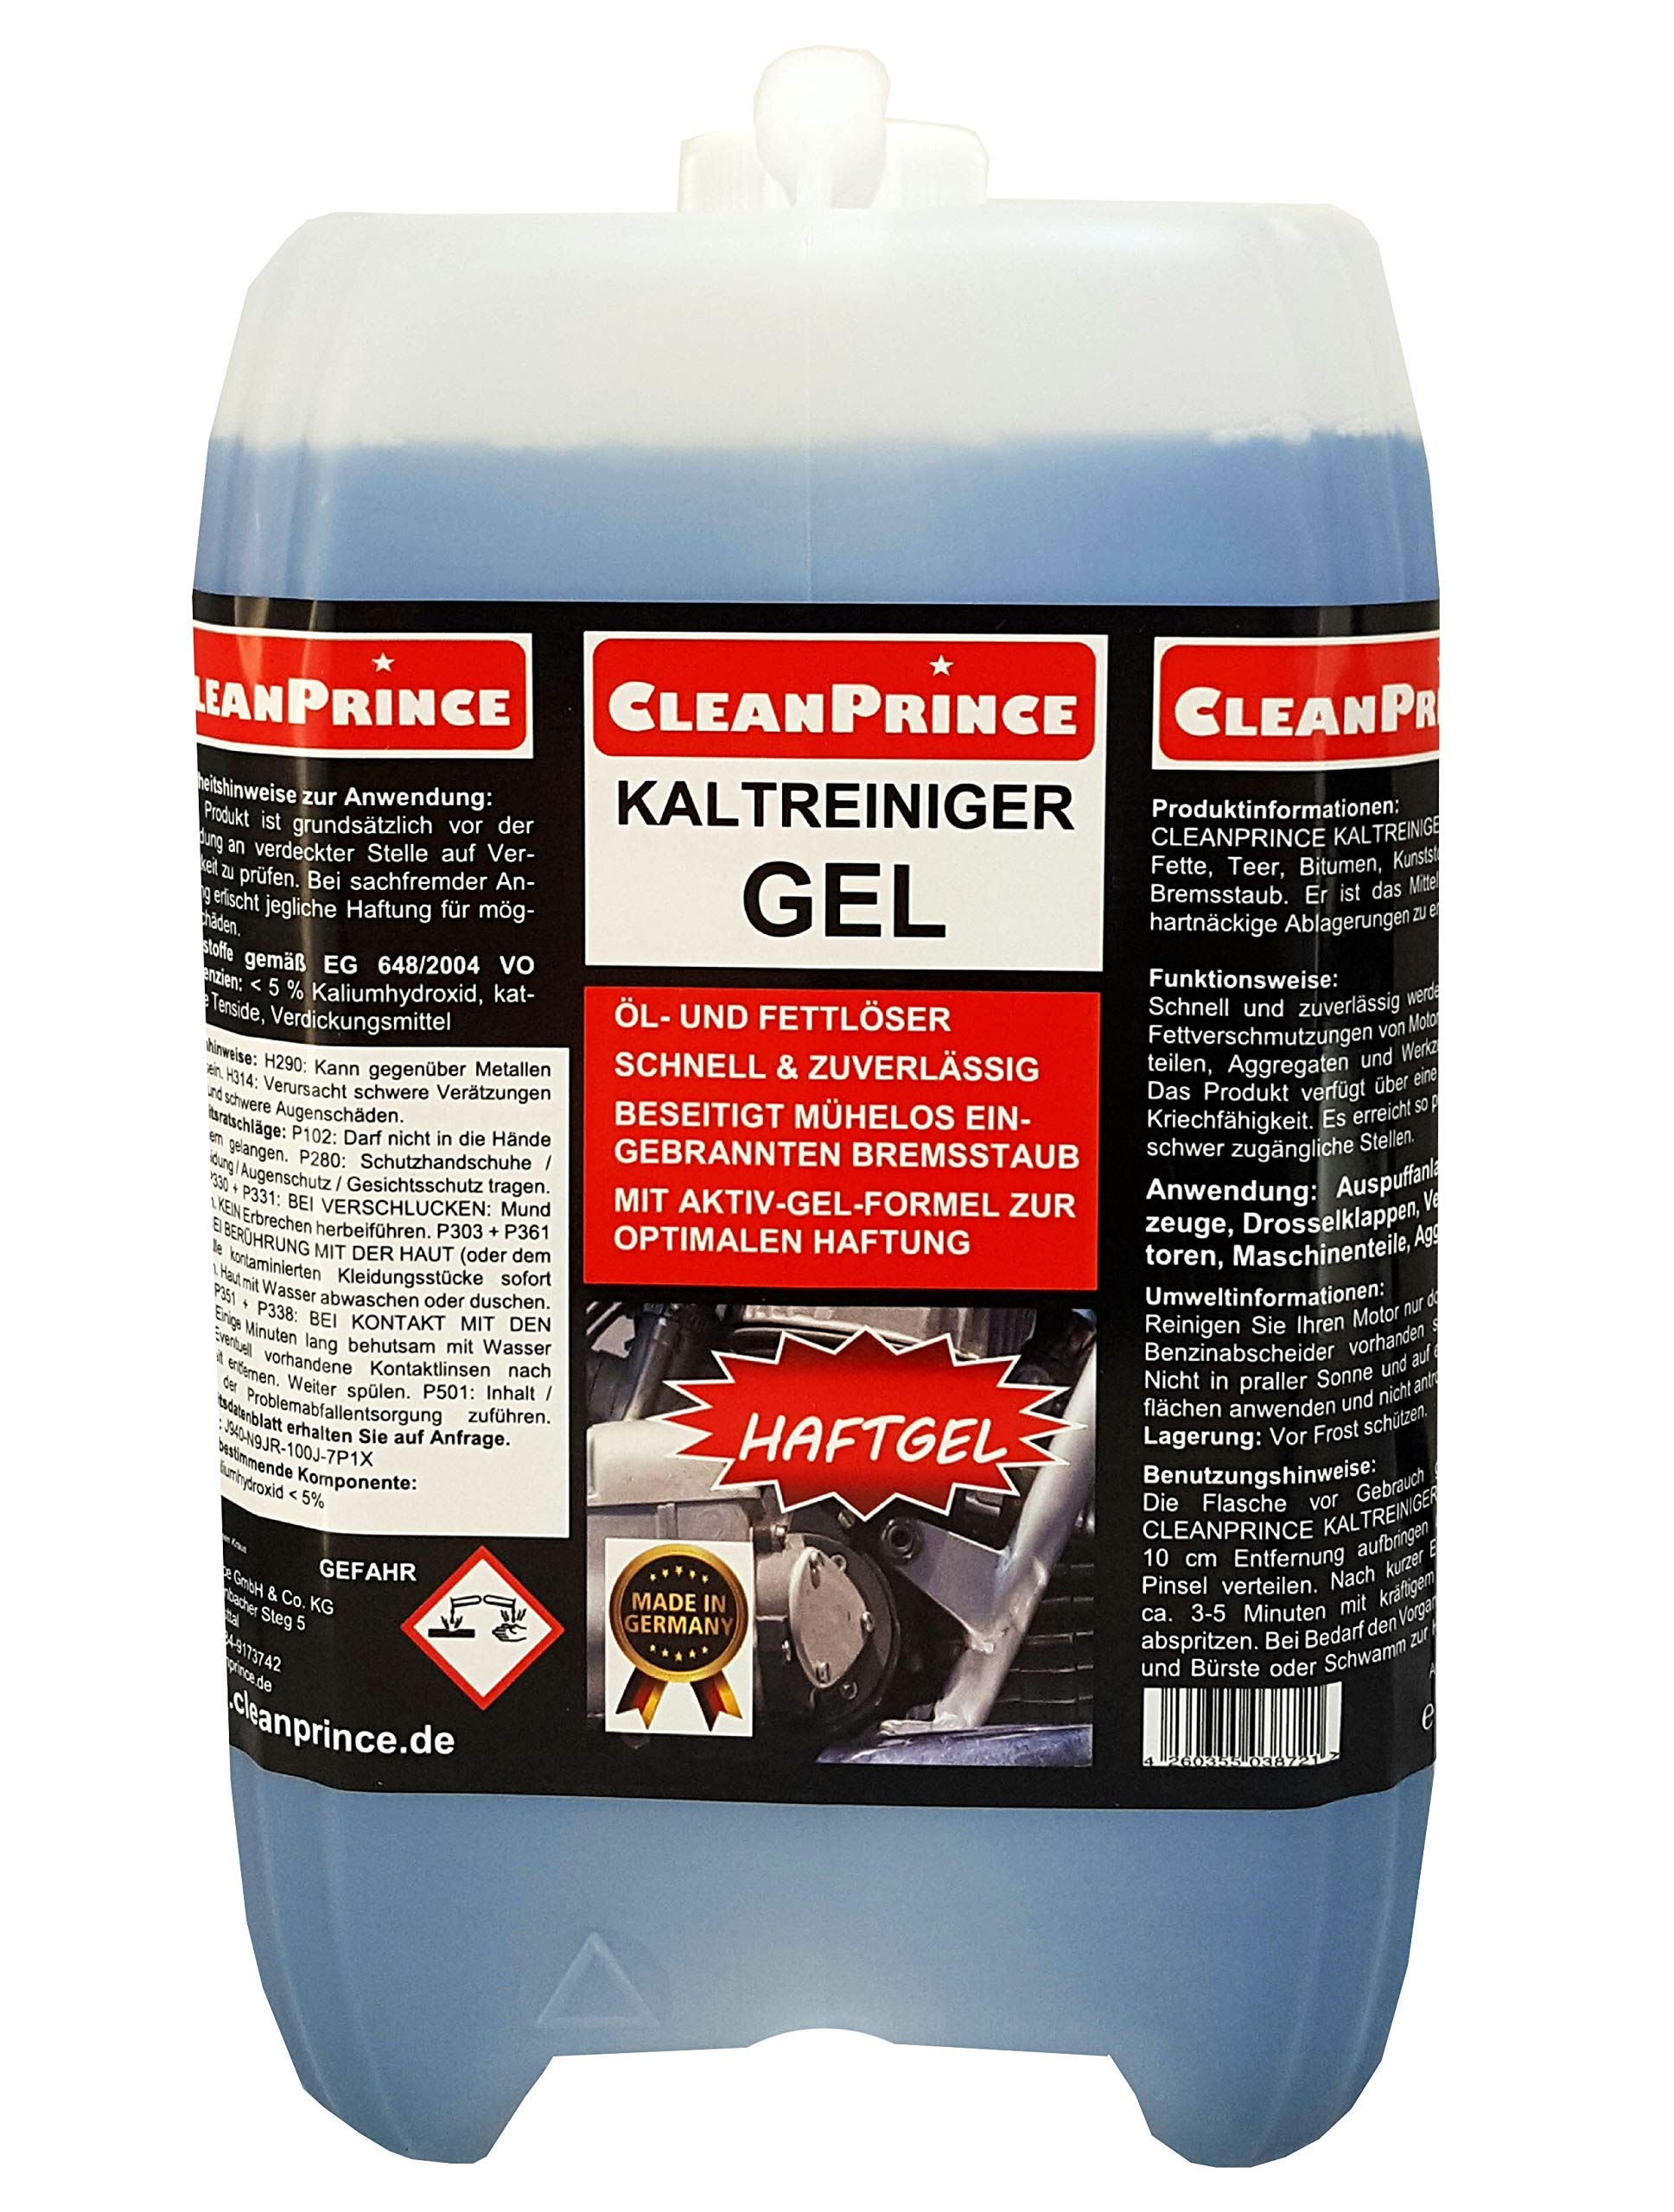 CleanPrince Kaltreiniger Gel 10 Liter Motorkaltreiniger Haftgel für Felgen Auspuffanlagen Maschinen Motoren Reinigungsmittel